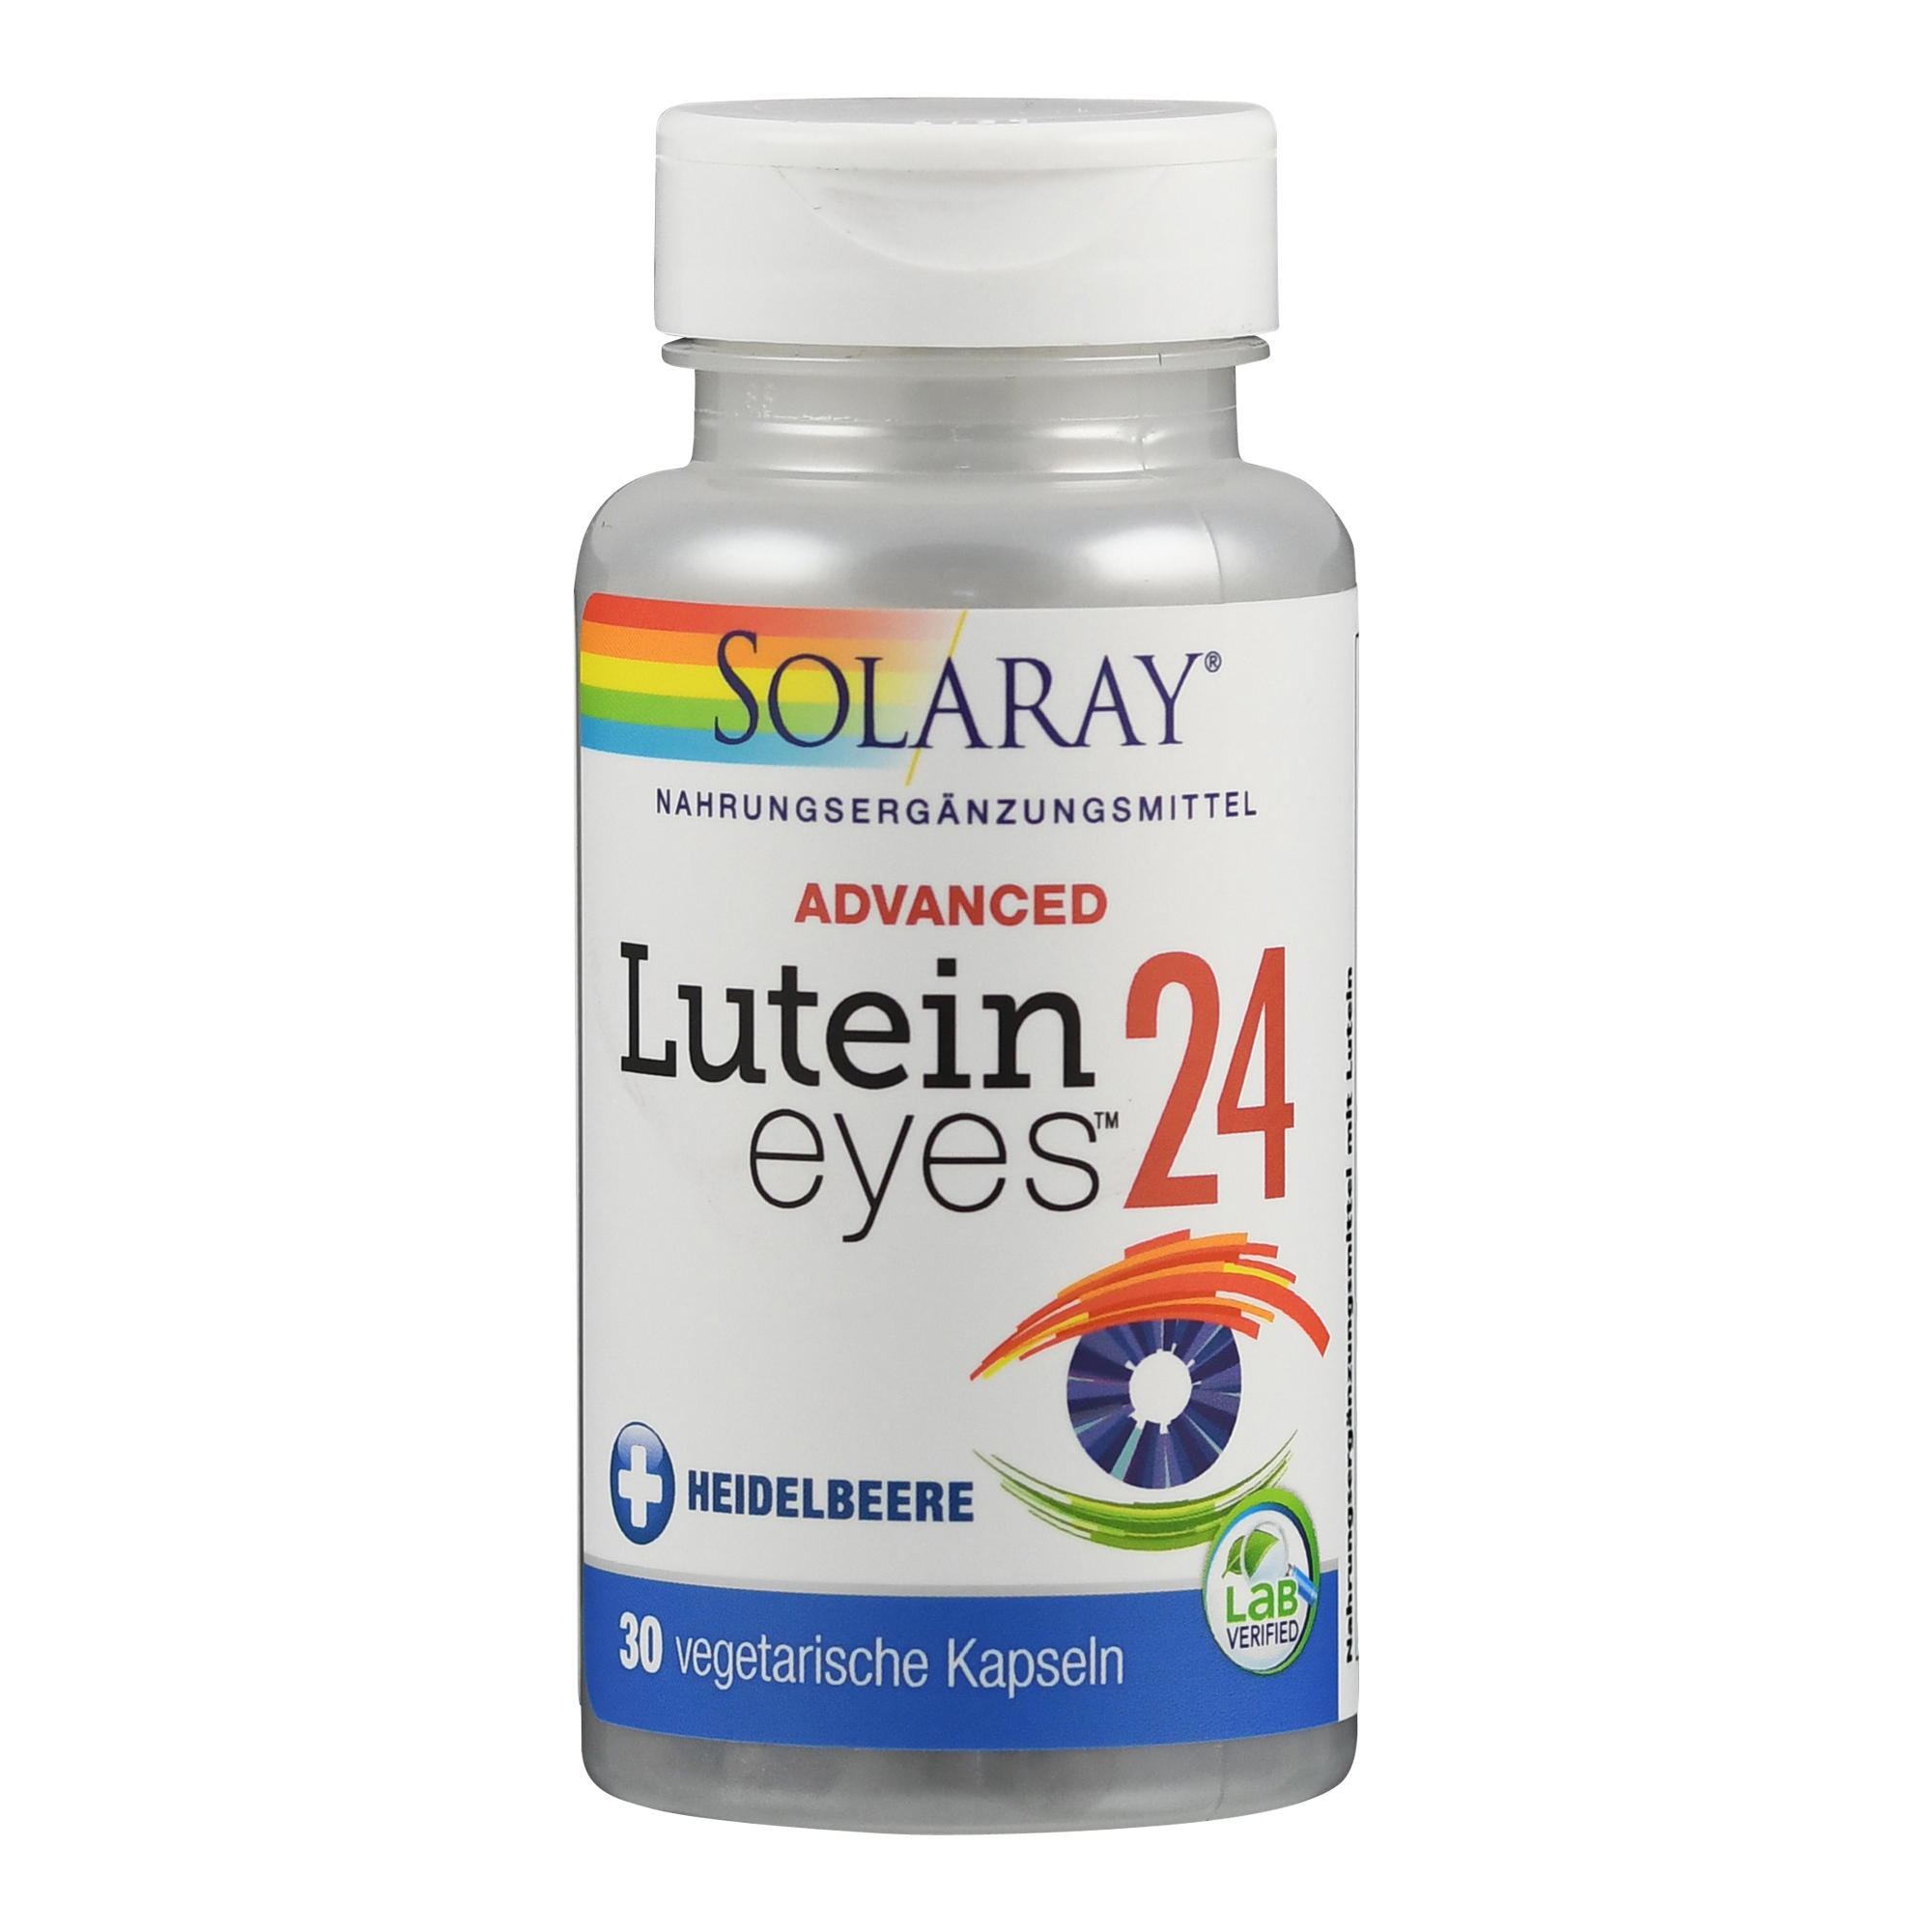 Lutein-Eyes Advanced von Solaray.